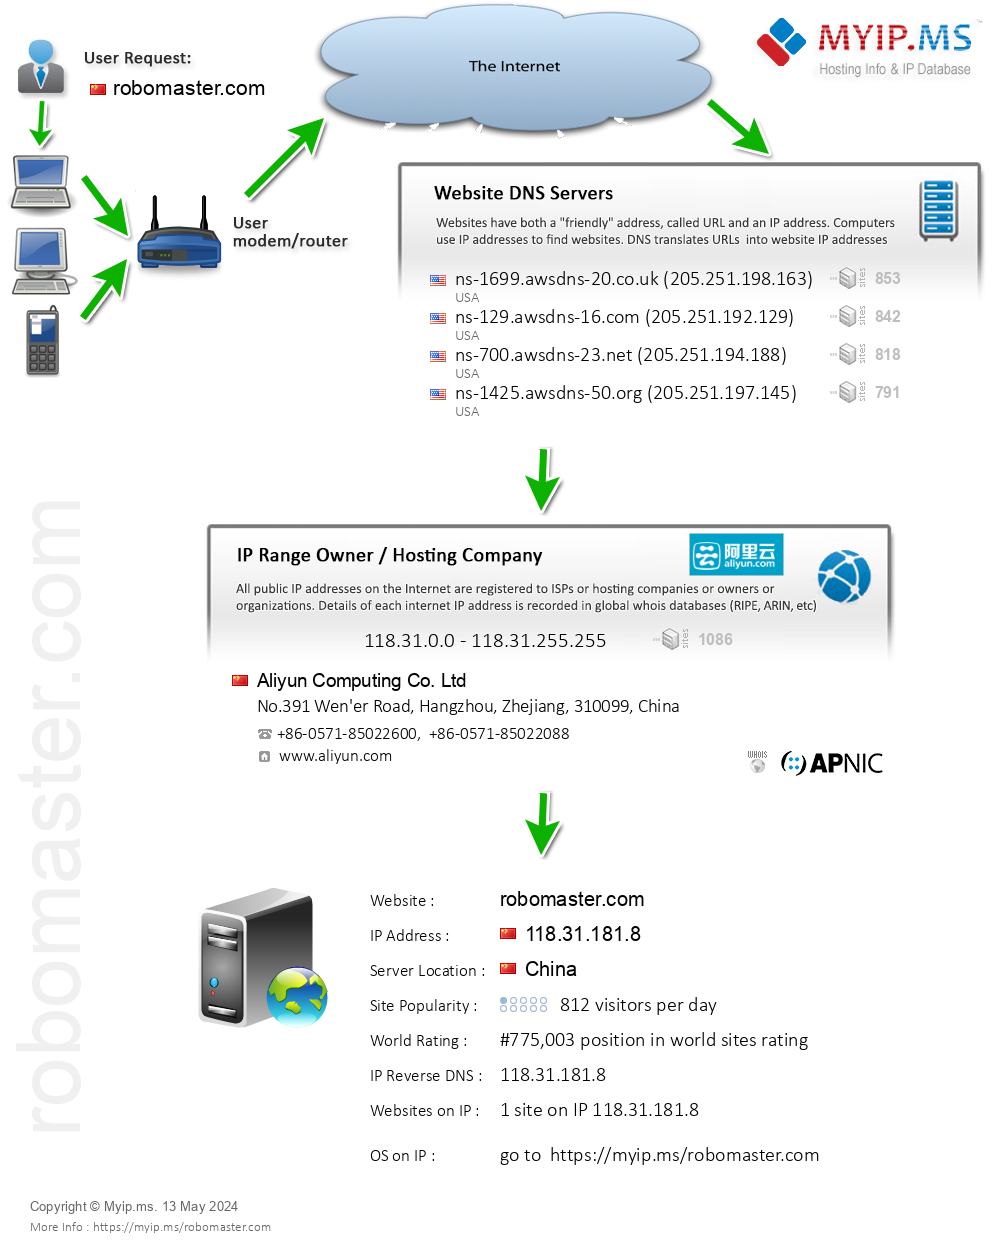 Robomaster.com - Website Hosting Visual IP Diagram